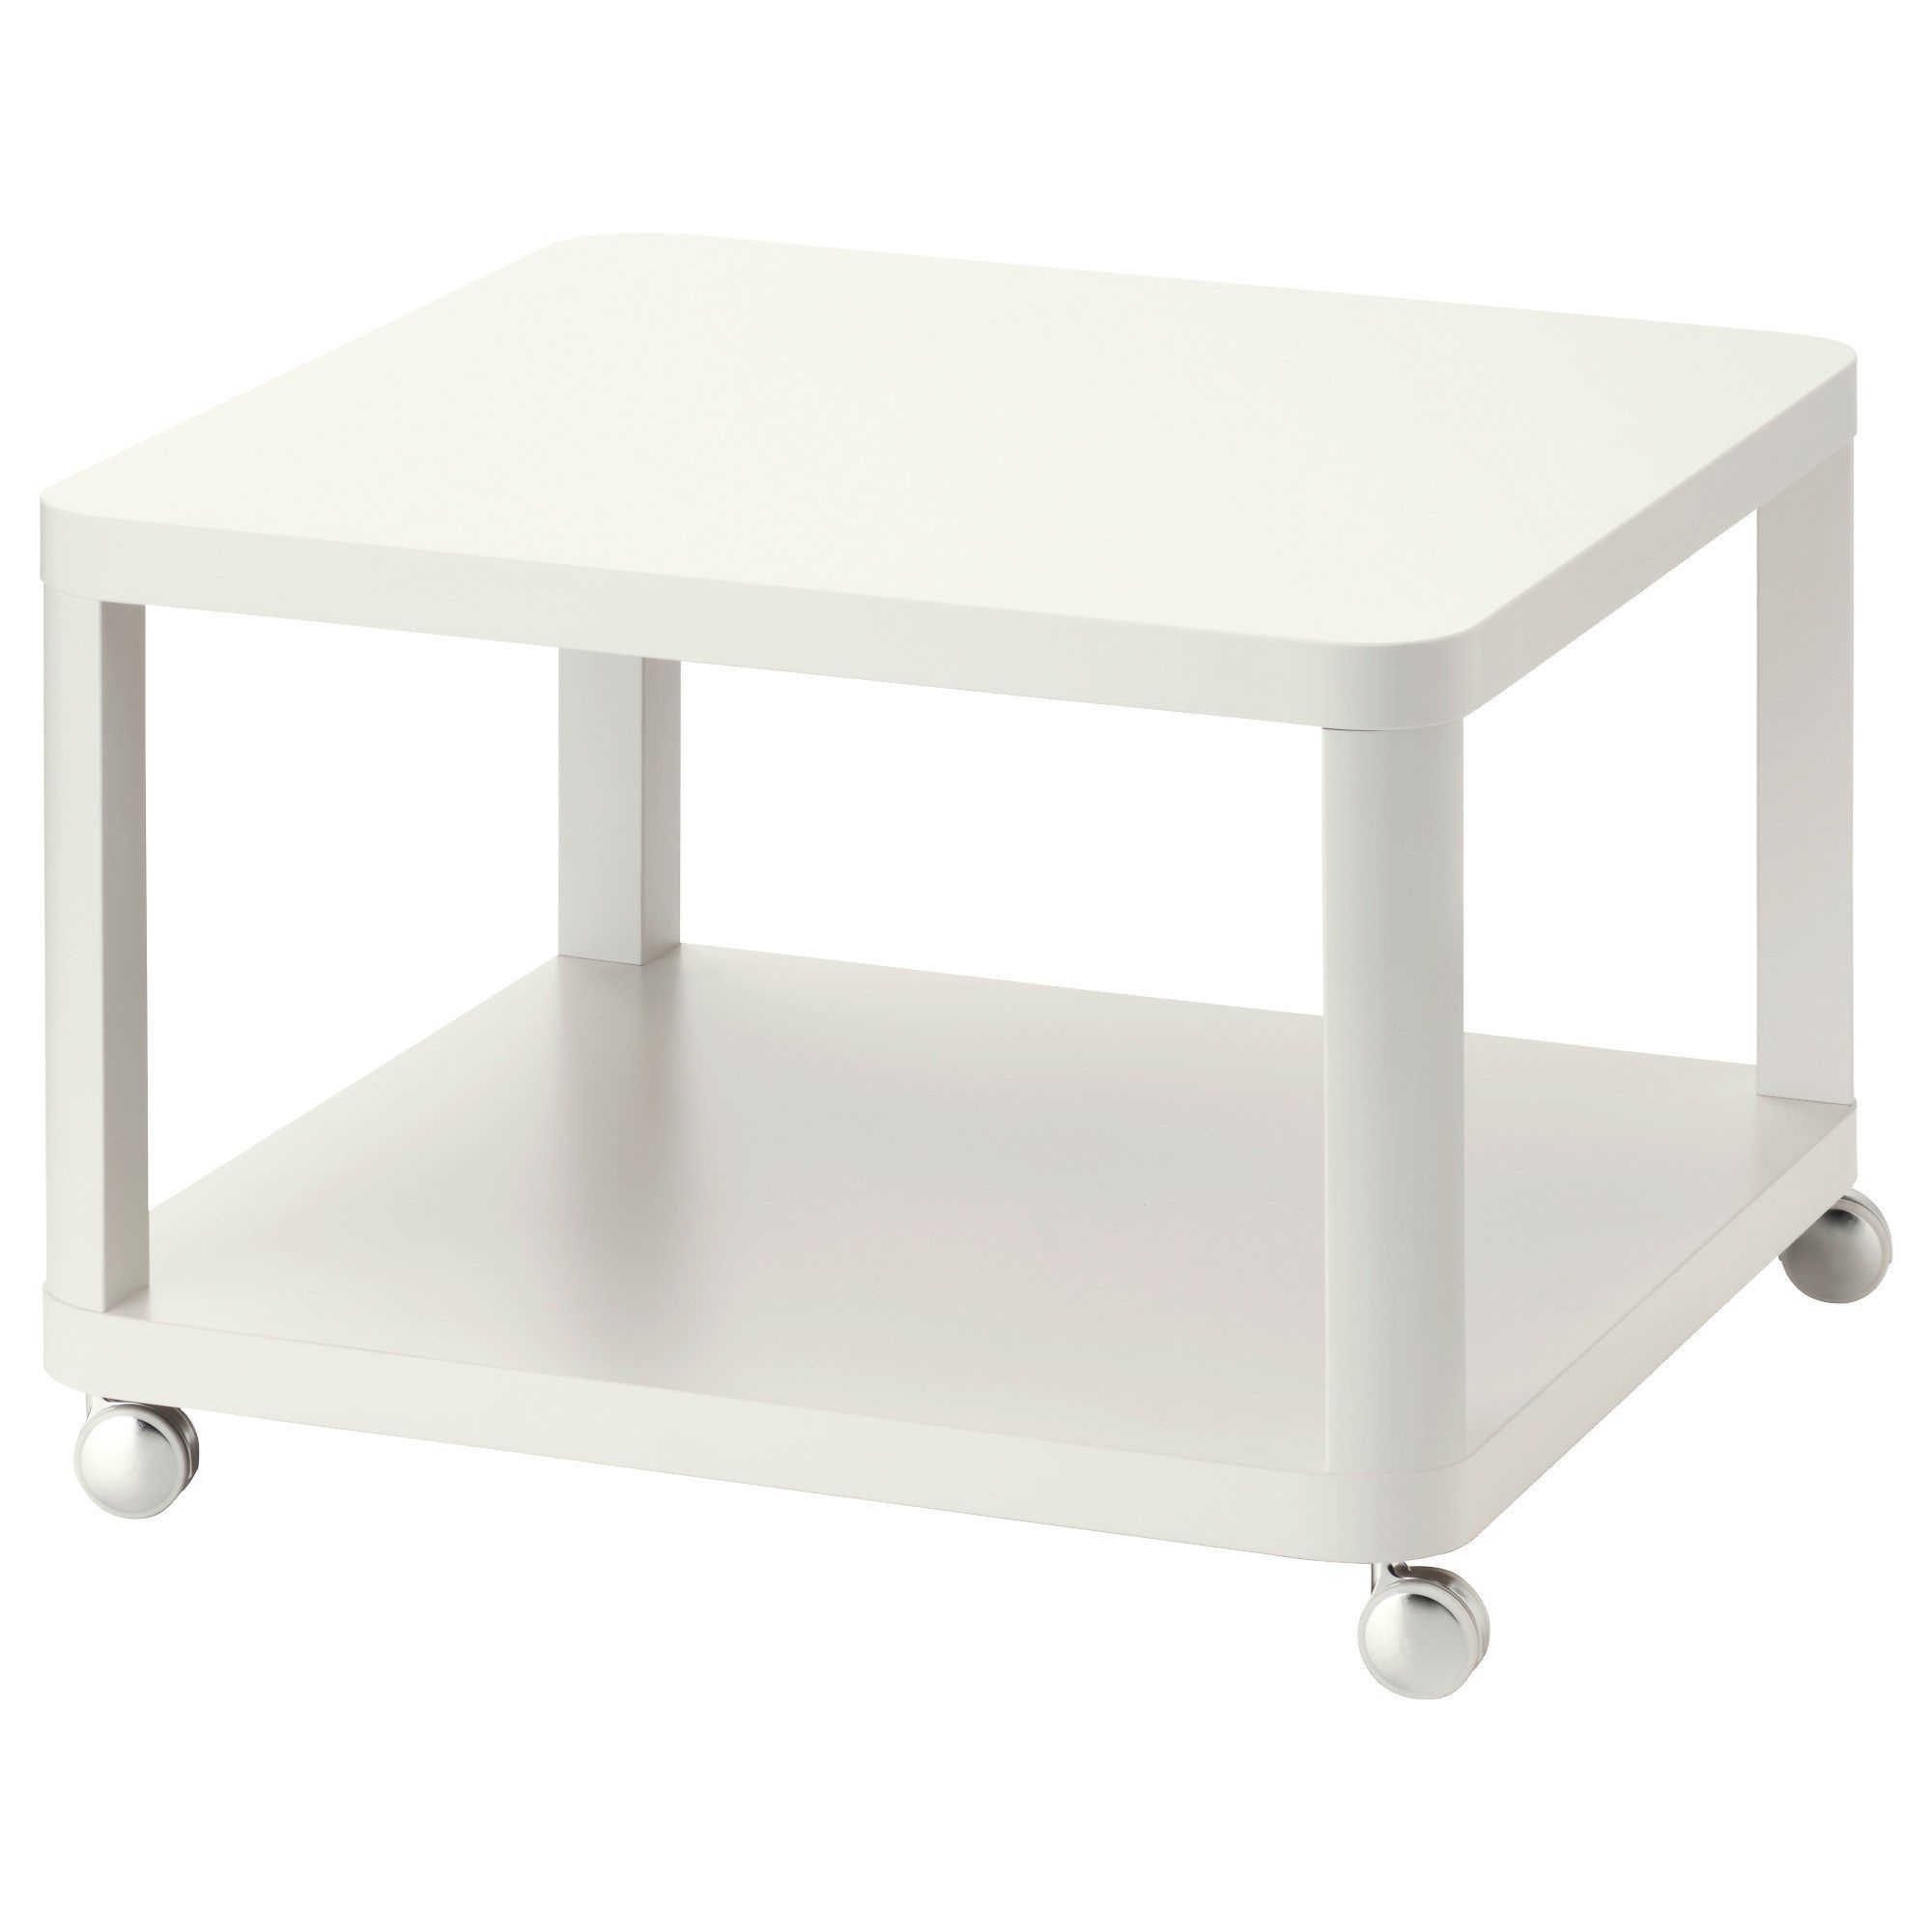 ТИНГБИ стол приставной на колесиках, белый 64x64 см